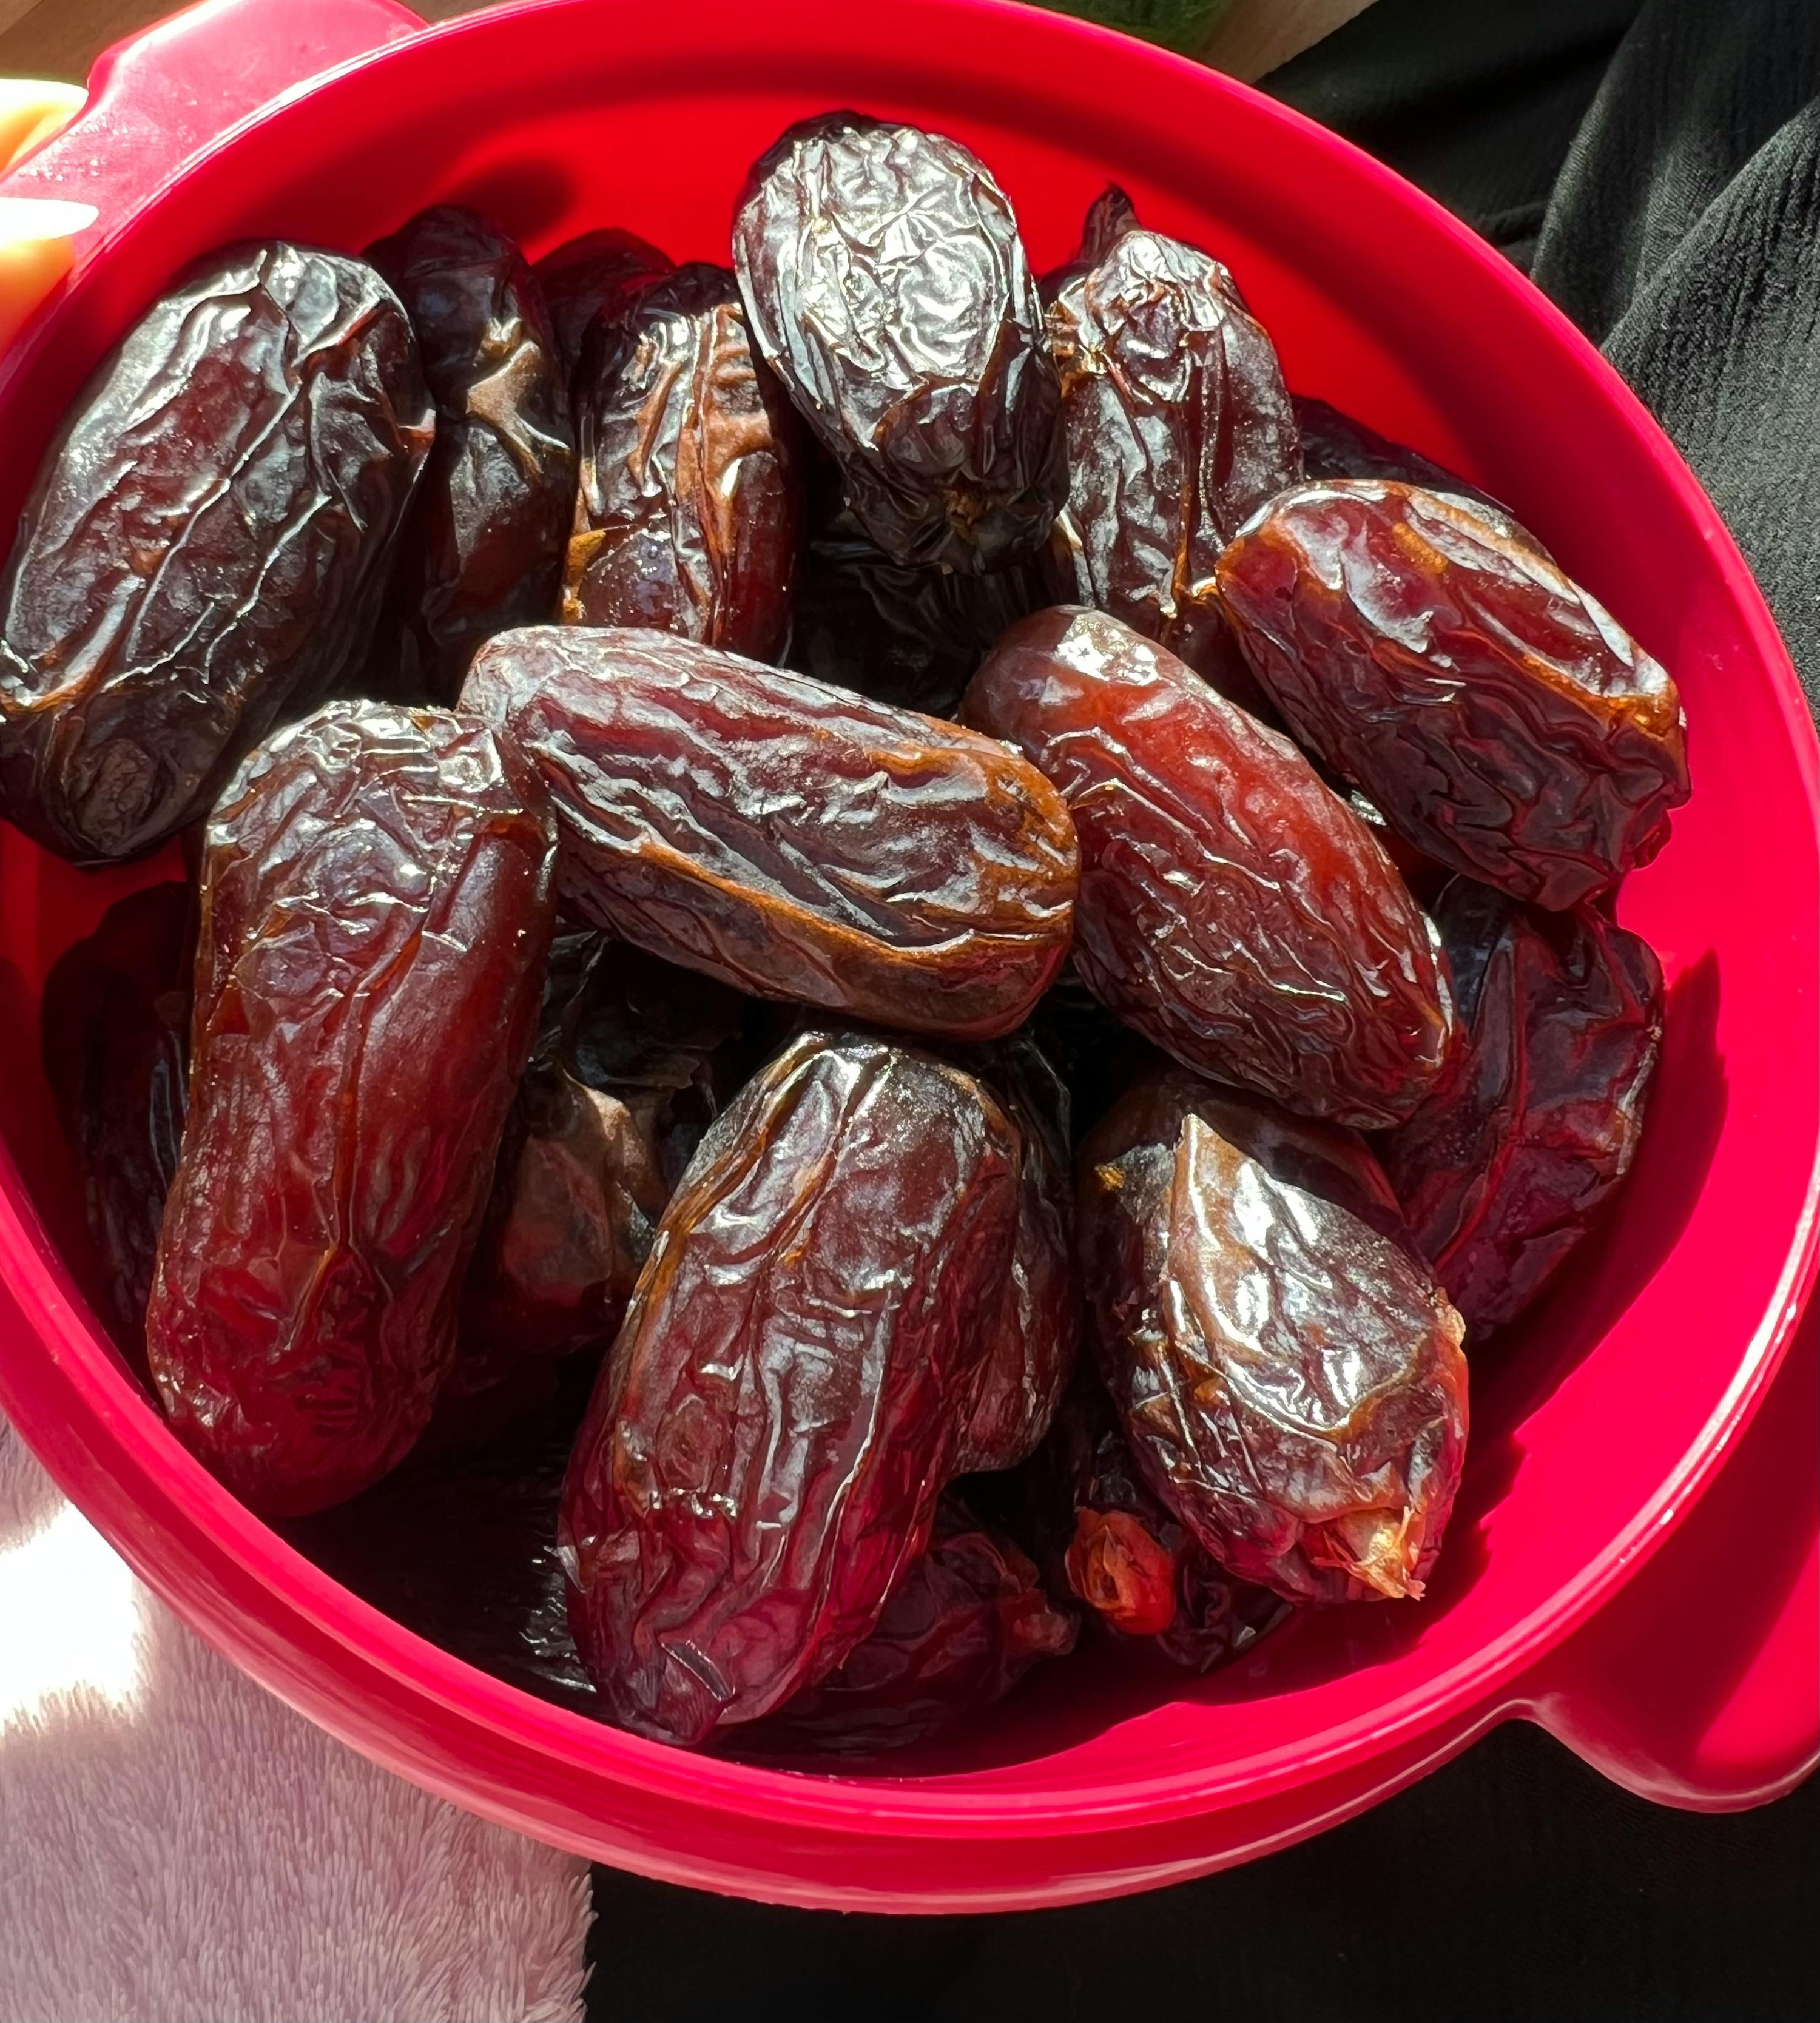 Deliciosos dátiles Medjool Large de calidad premium: sabores exquisitos de  Marruecos 1Kg